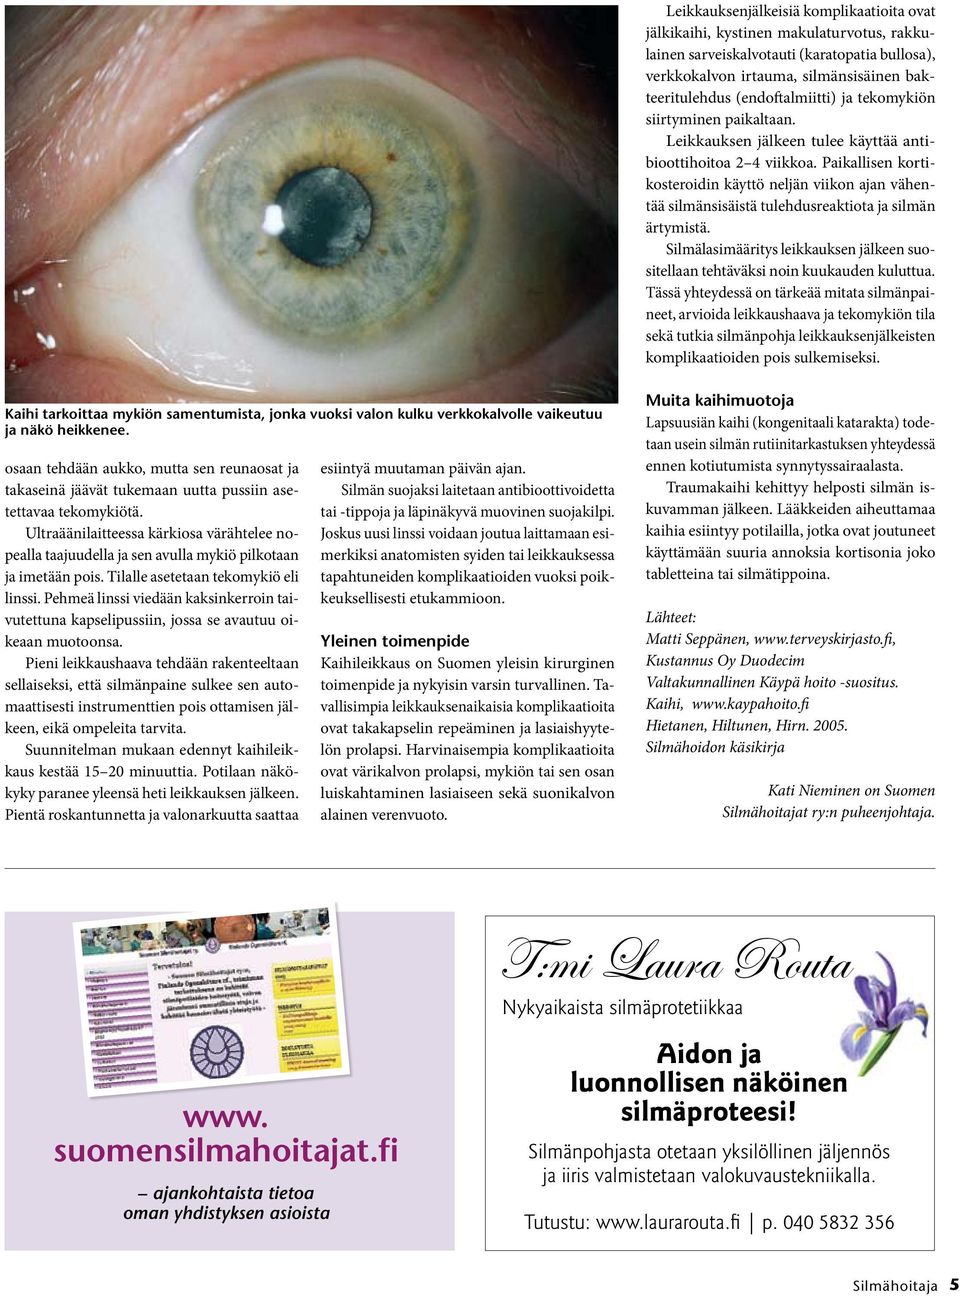 Paikallisen kortikosteroidin käyttö neljän viikon ajan vähentää silmänsisäistä tulehdusreaktiota ja silmän ärtymistä.